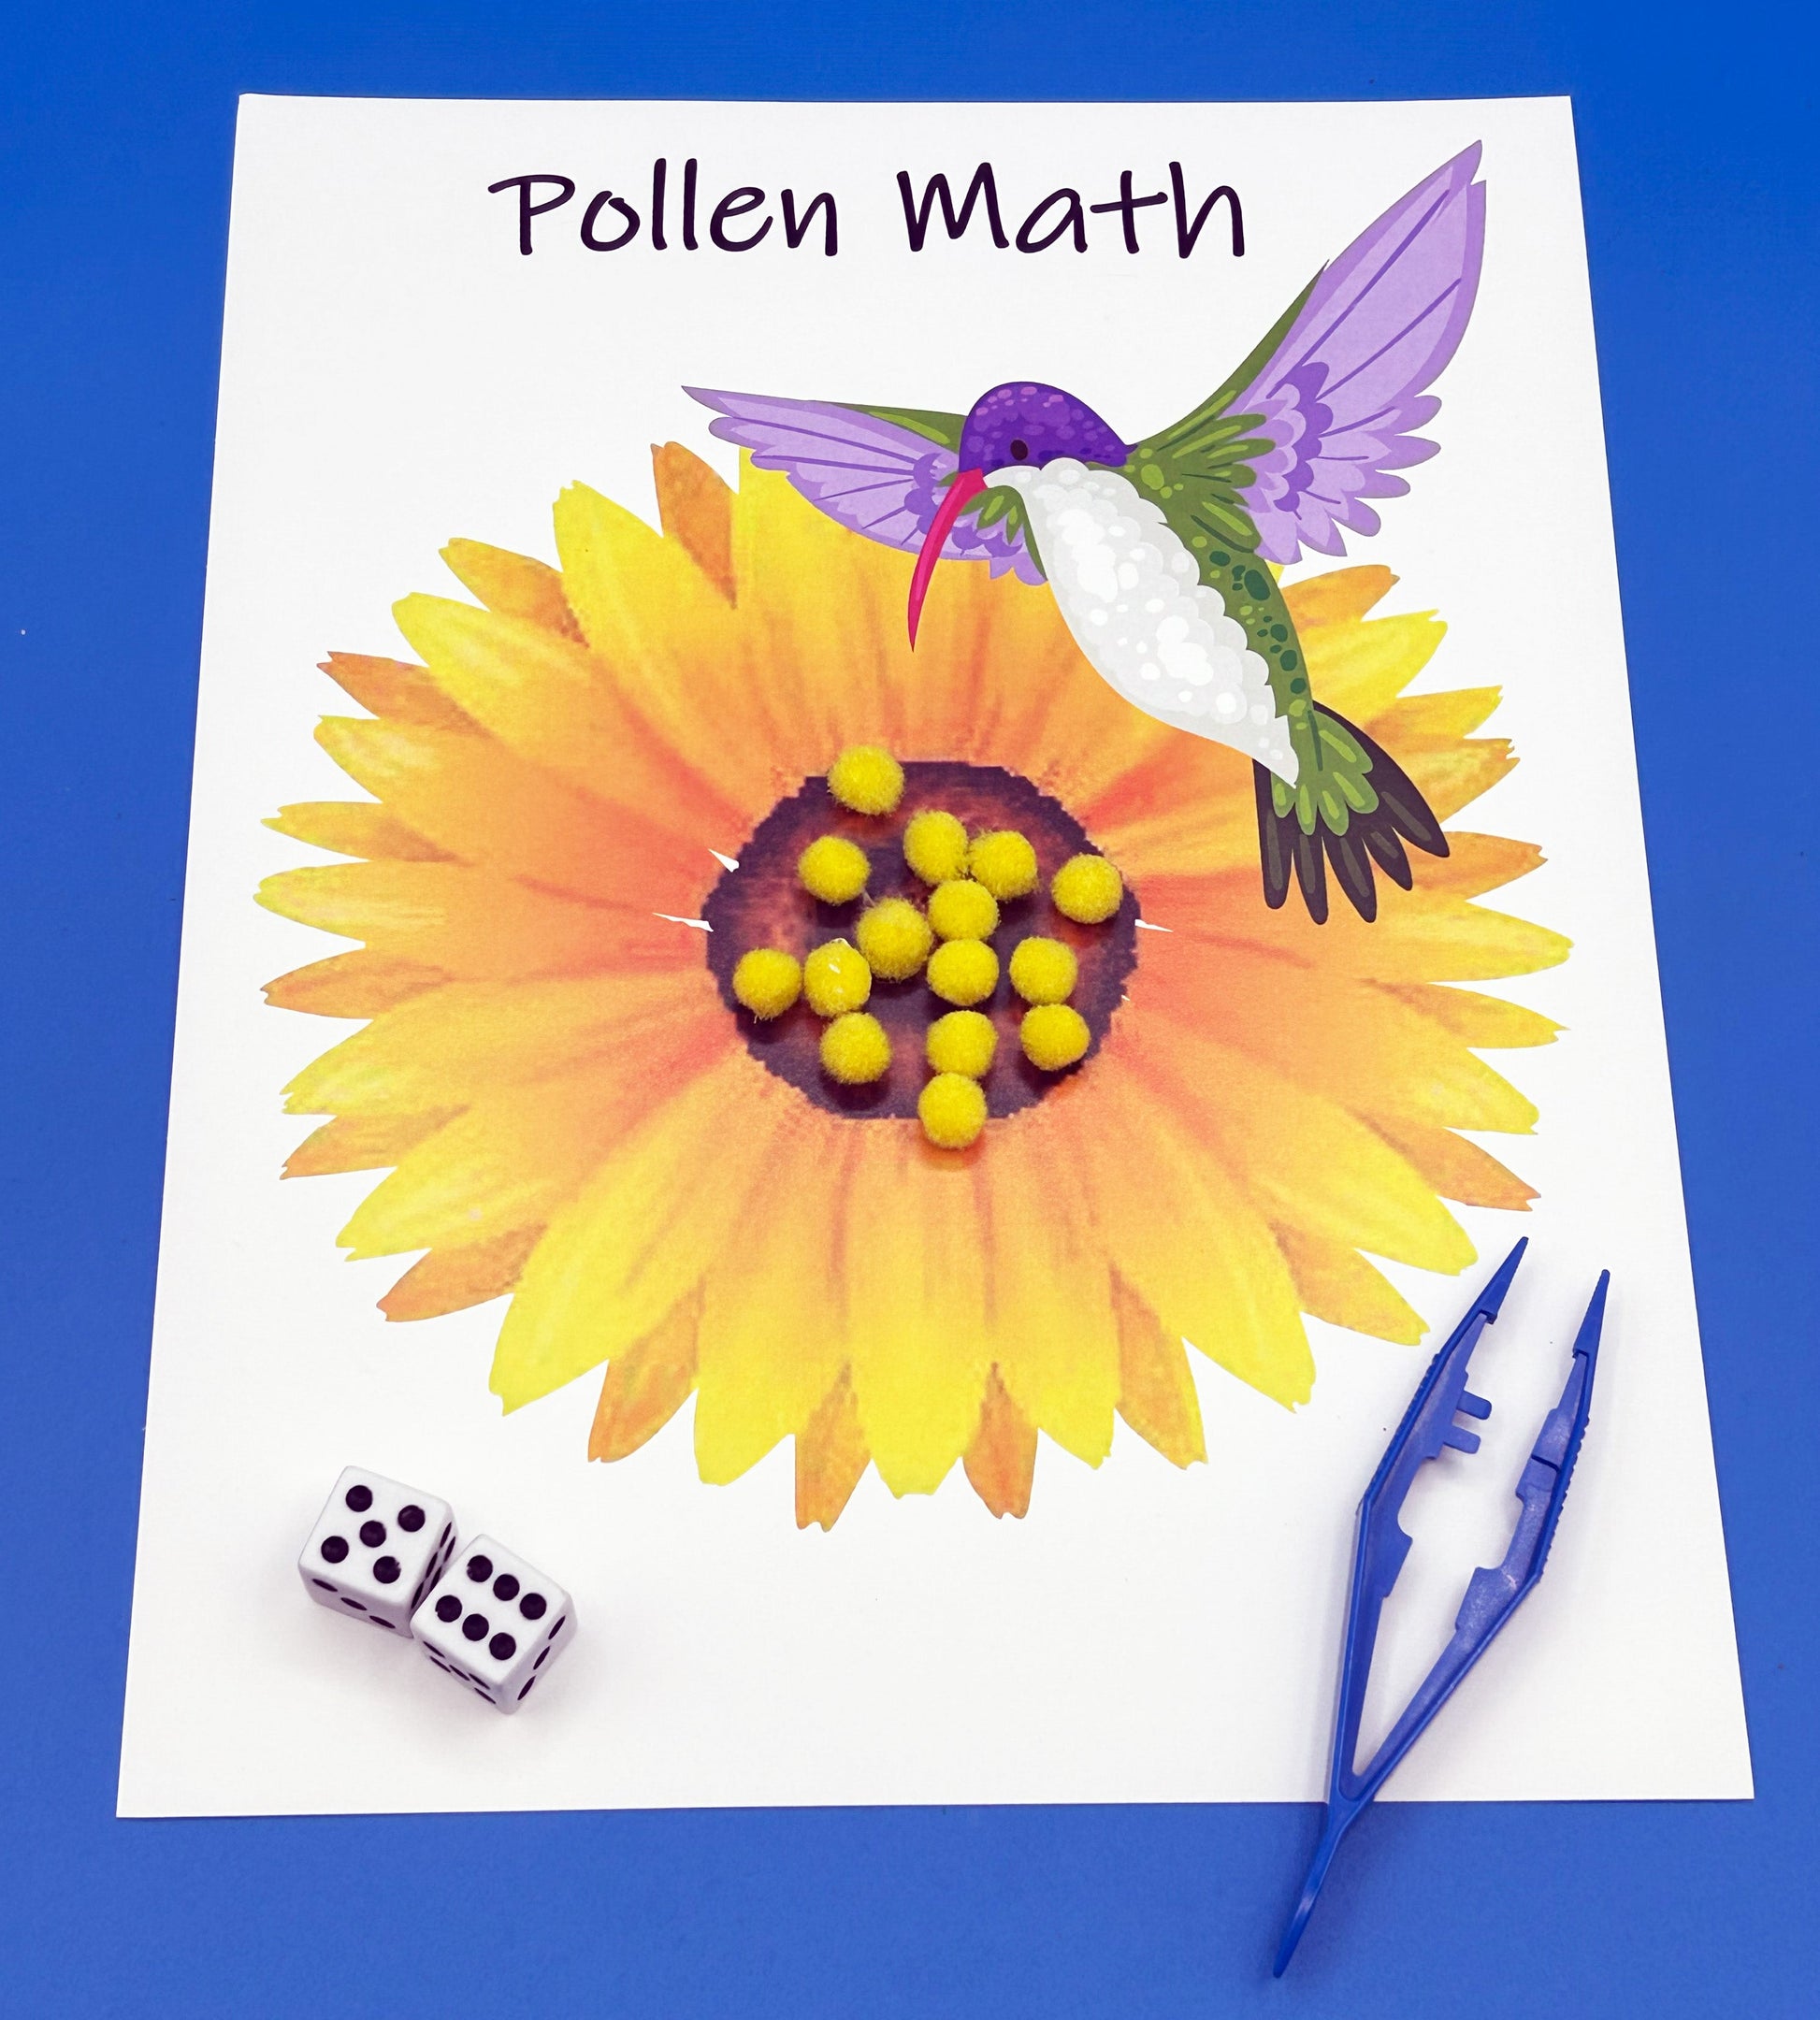 Pollen math